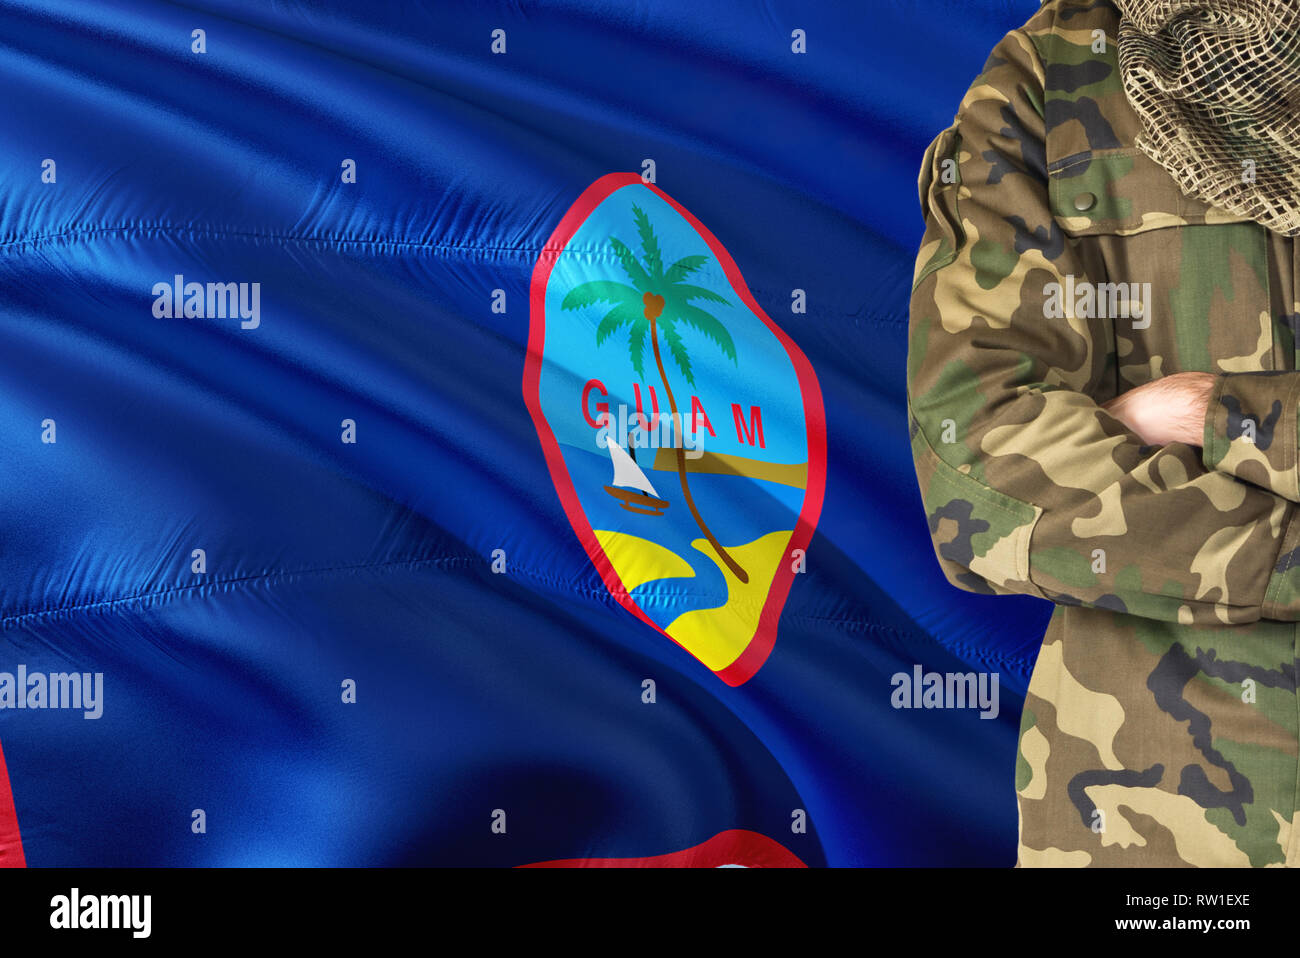 Gekreuzte Arme Soldat mit nationalen wehende Flagge auf Hintergrund - Guam militärischen Thema. Stockfoto